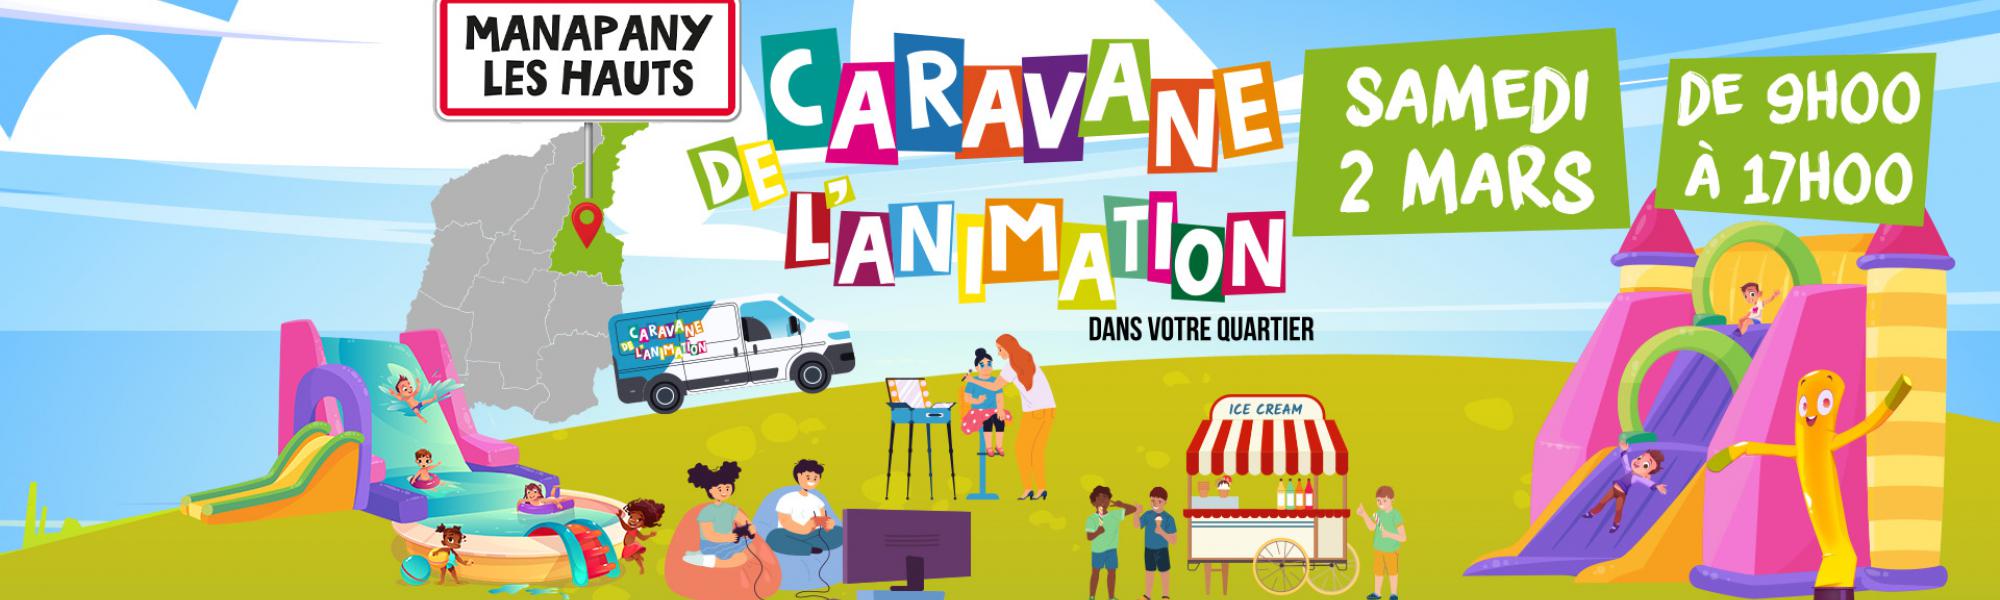 Caravane de l'animation à Manapany les Hauts le samedi 2 mars